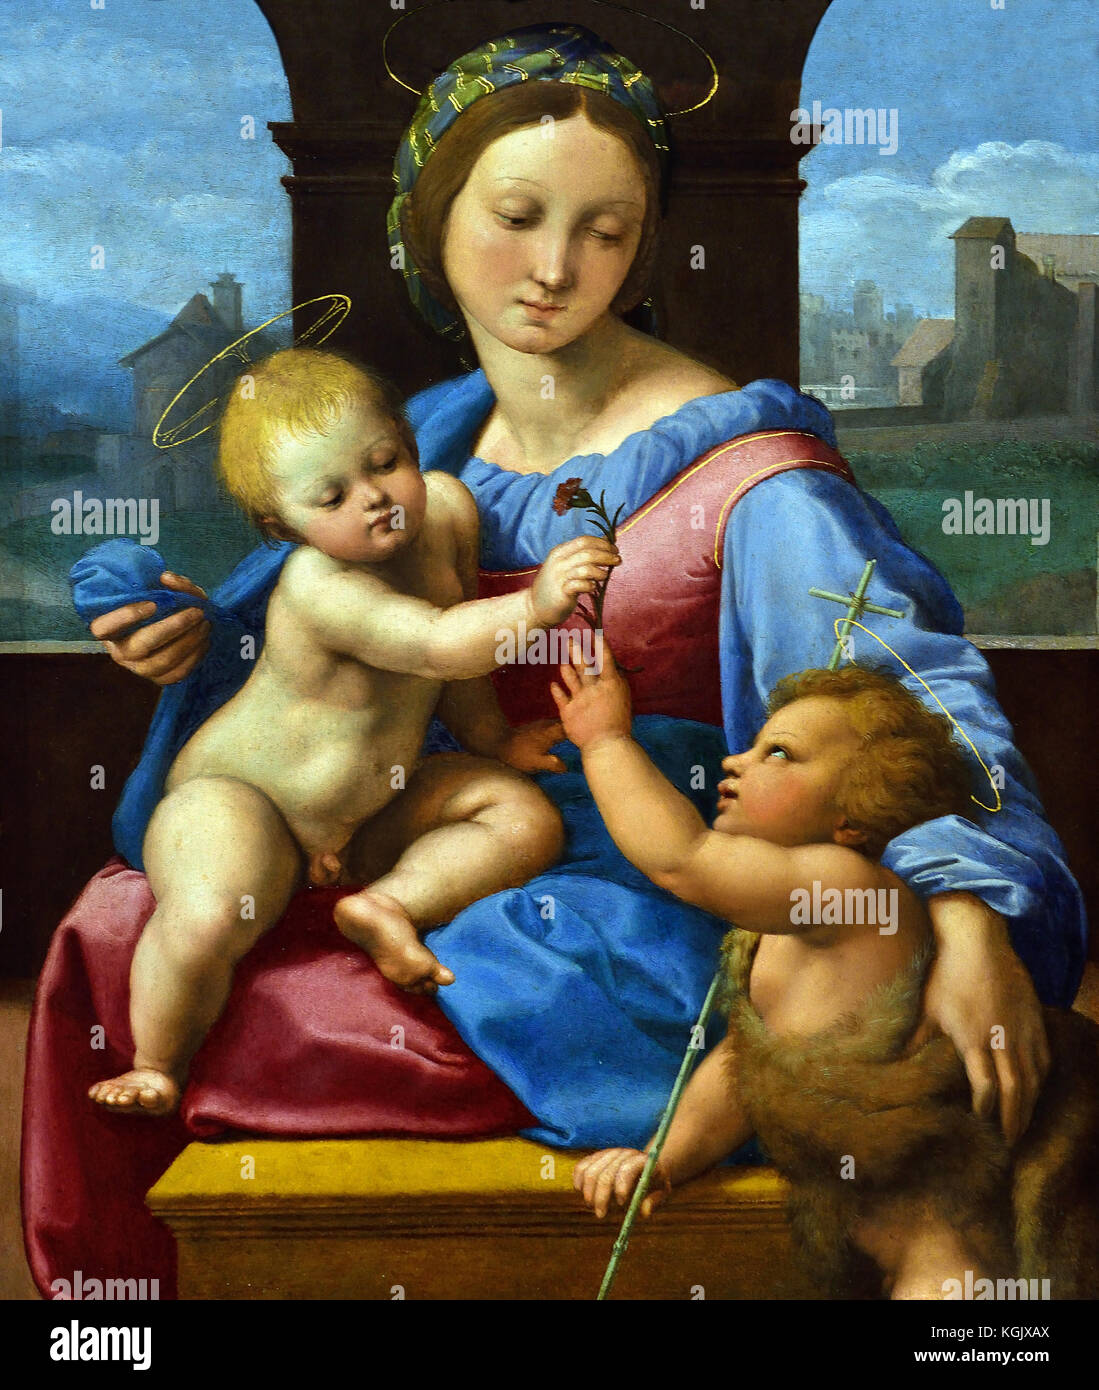 La Madone Garvagh 1509 par Raphael - Raffaello Sanzio da Urbino 1483 -1520 est un peintre italien et architecte de la Haute Renaissance Italie Banque D'Images